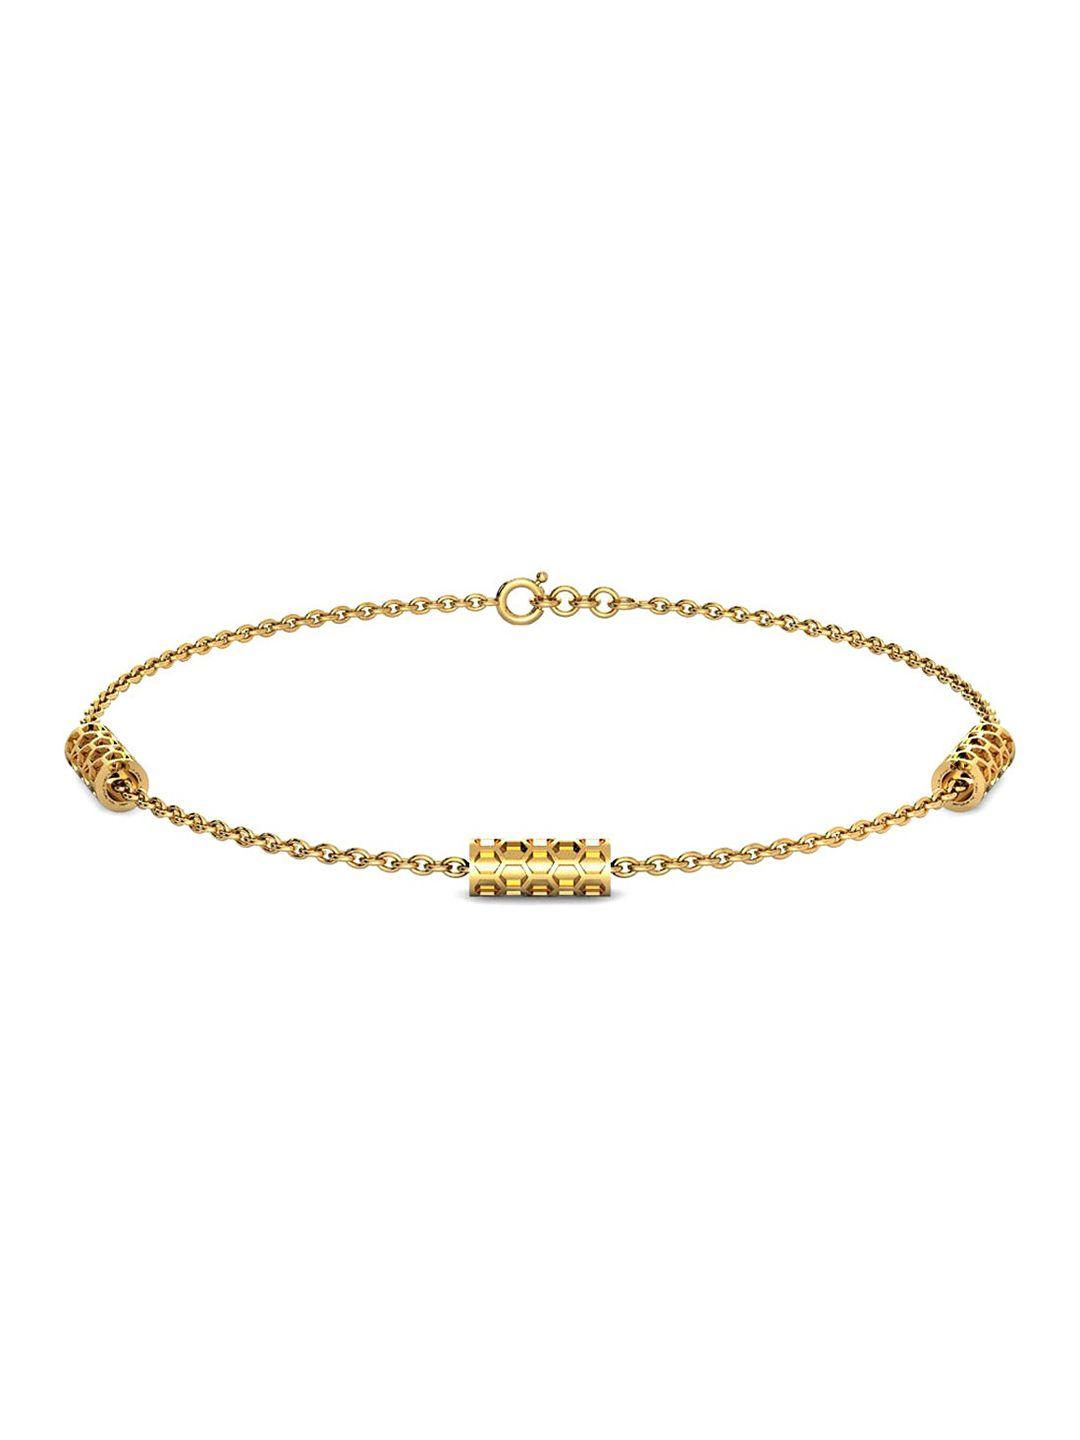 candere-a-kalyan-jewellers-company-18kt-gold-bracelet-2.48gm